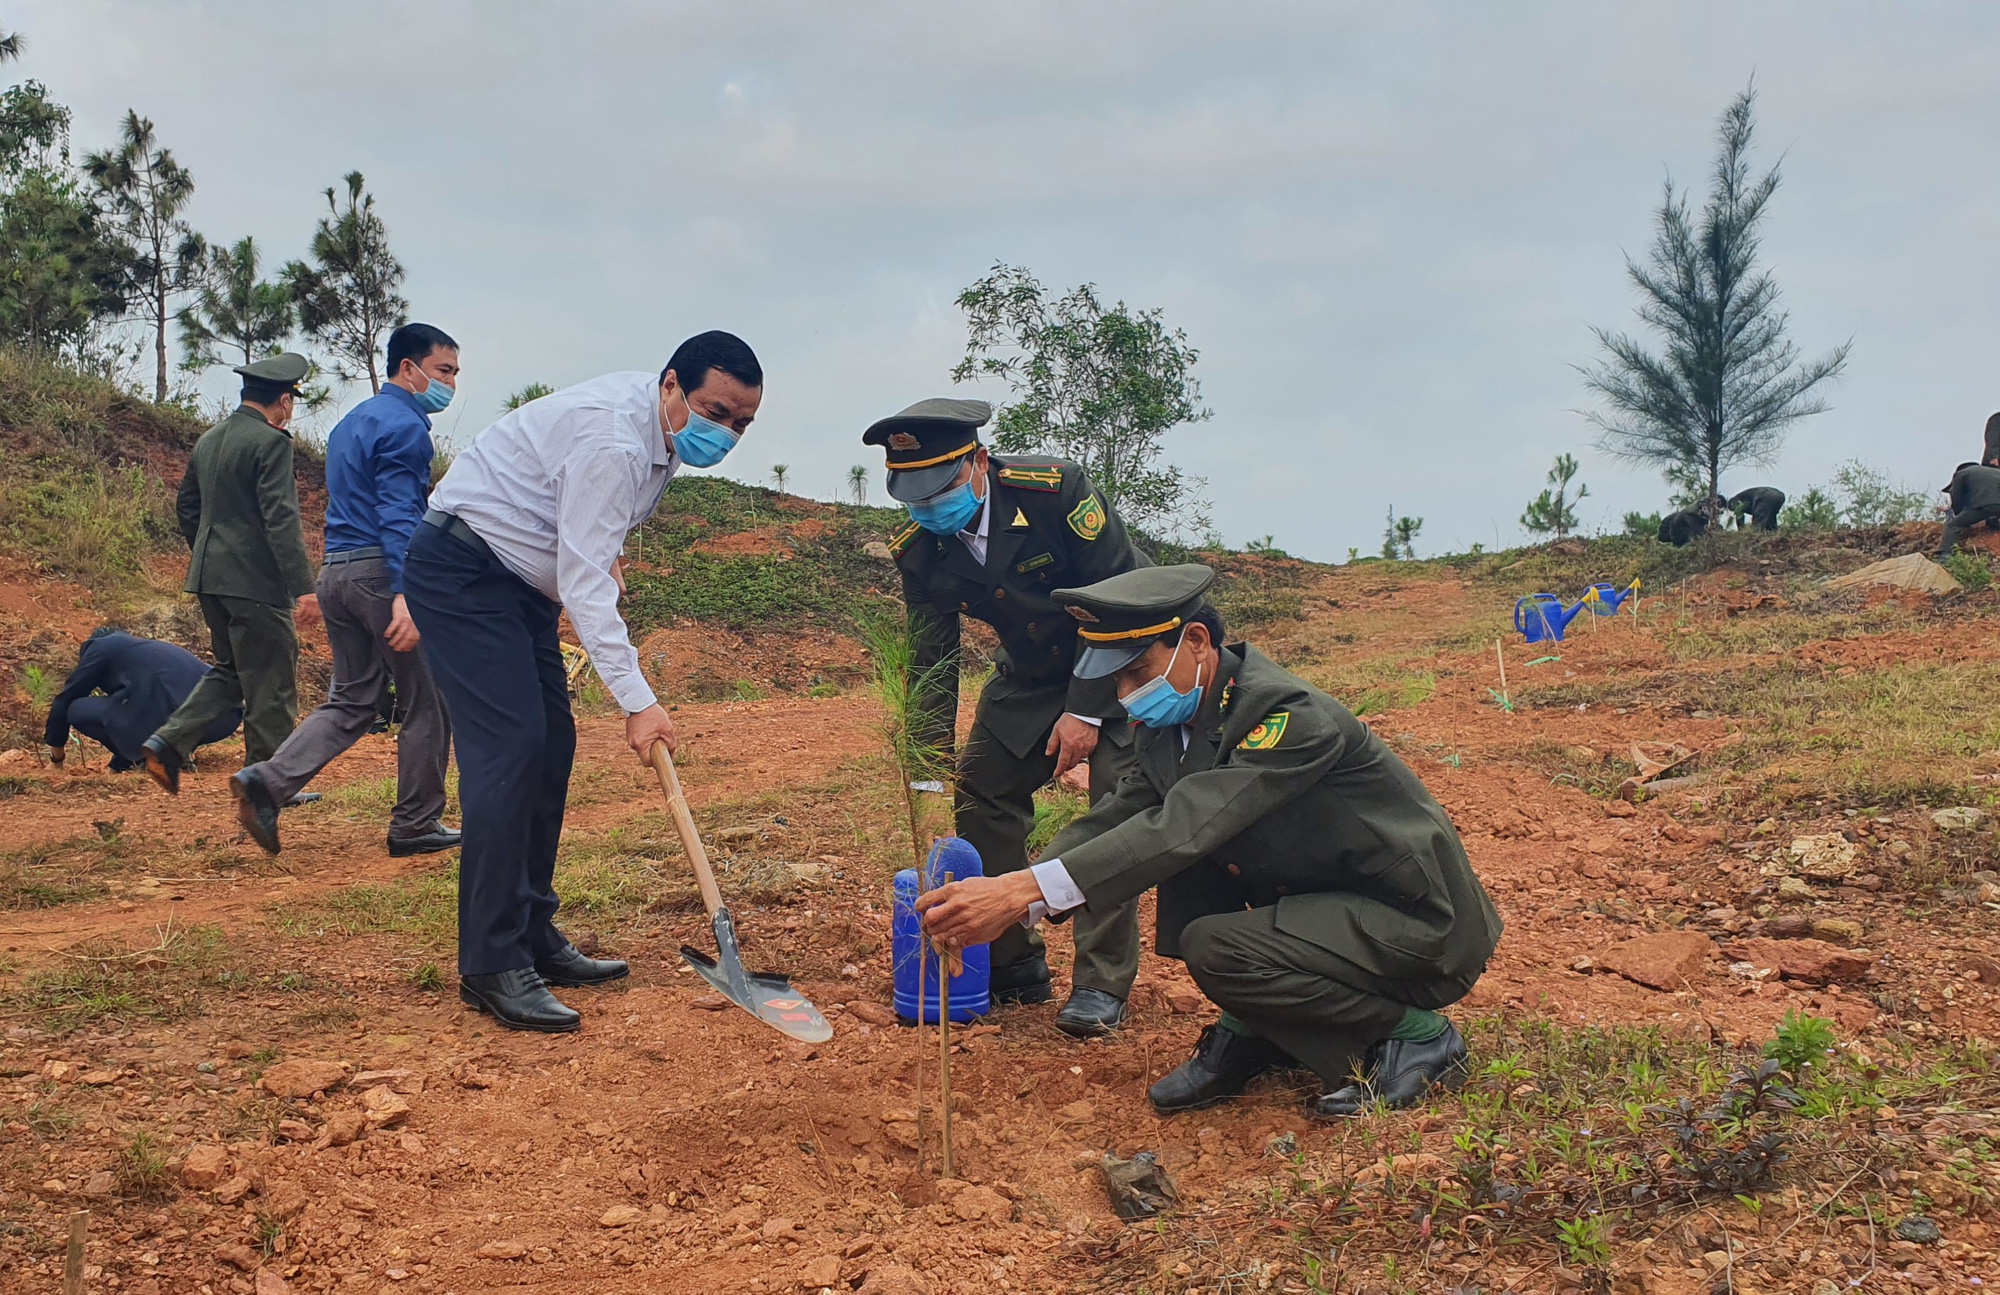 Quảng Nam: Bí thư và Chủ tịch tỉnh hưởng ứng trồng 1 tỷ cây xanh - Ảnh 1.